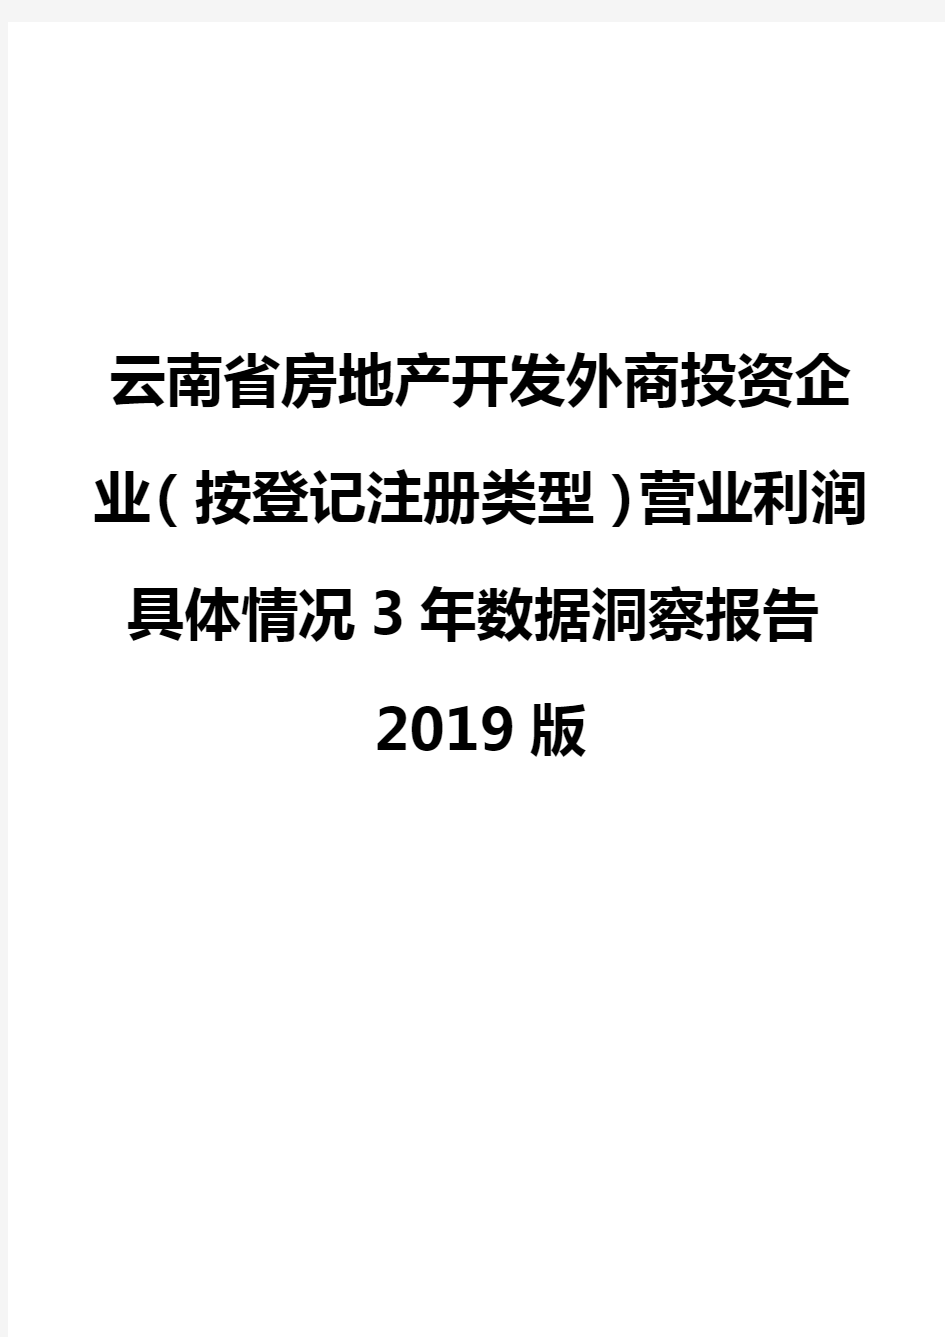 云南省房地产开发外商投资企业(按登记注册类型)营业利润具体情况3年数据洞察报告2019版